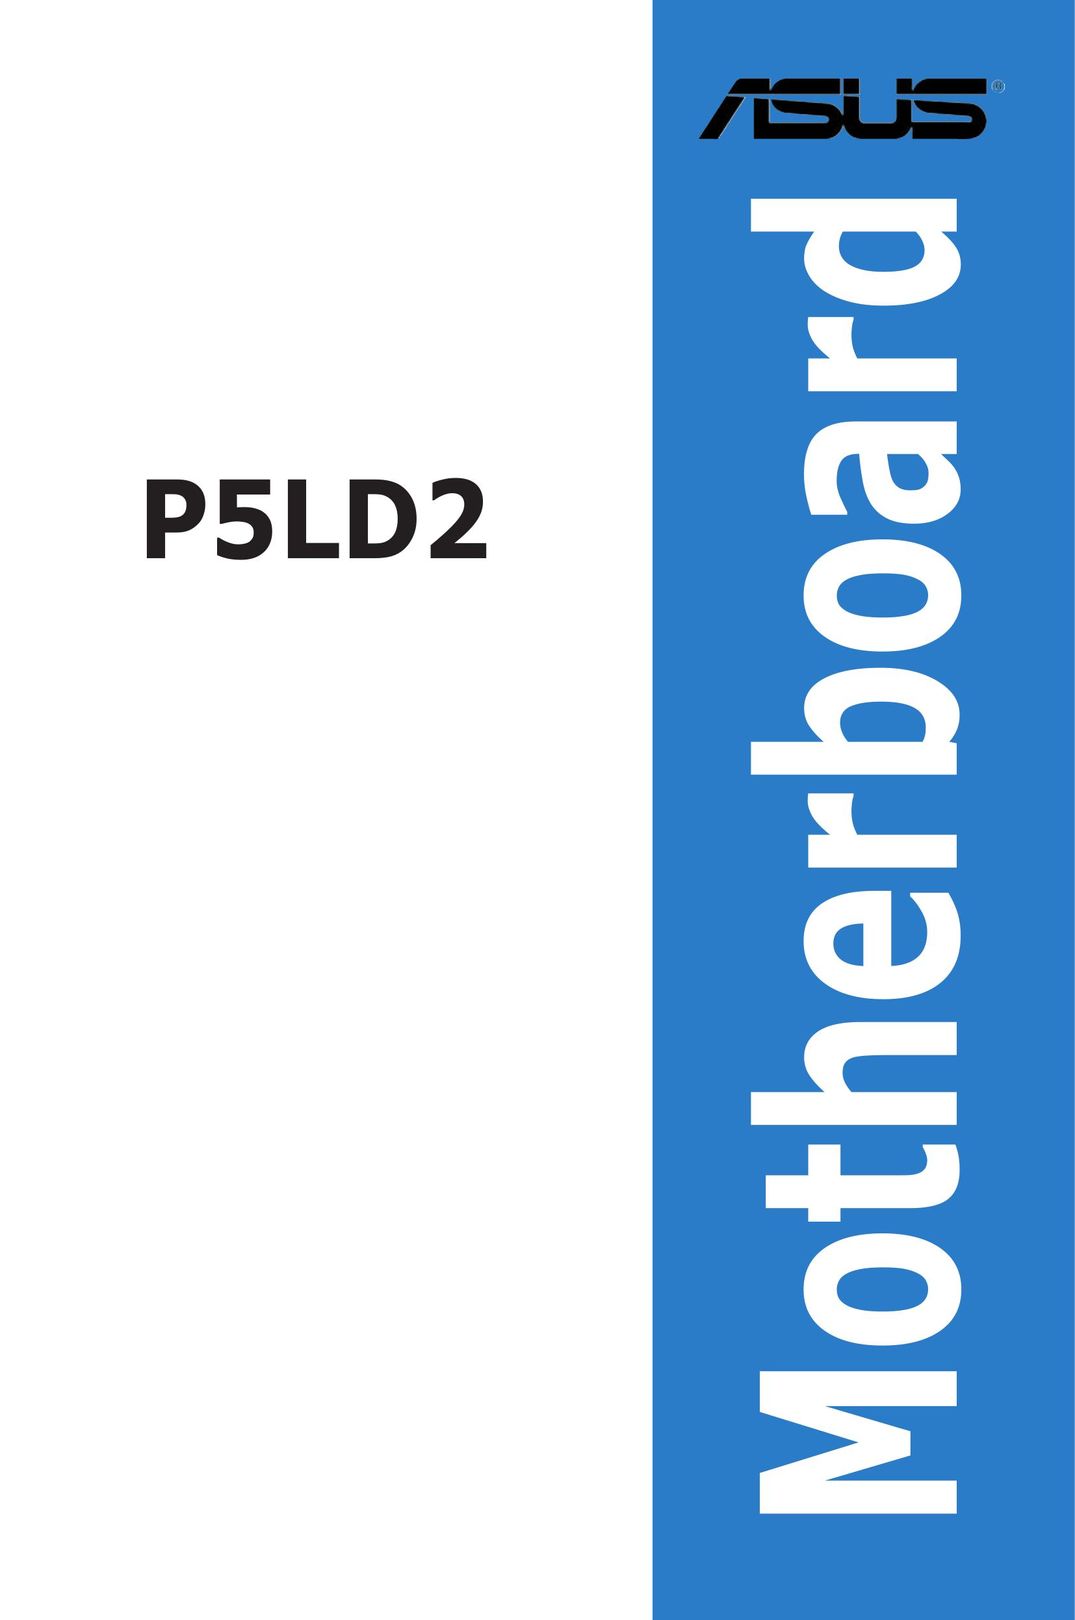 Asus P5LD2 Network Card User Manual